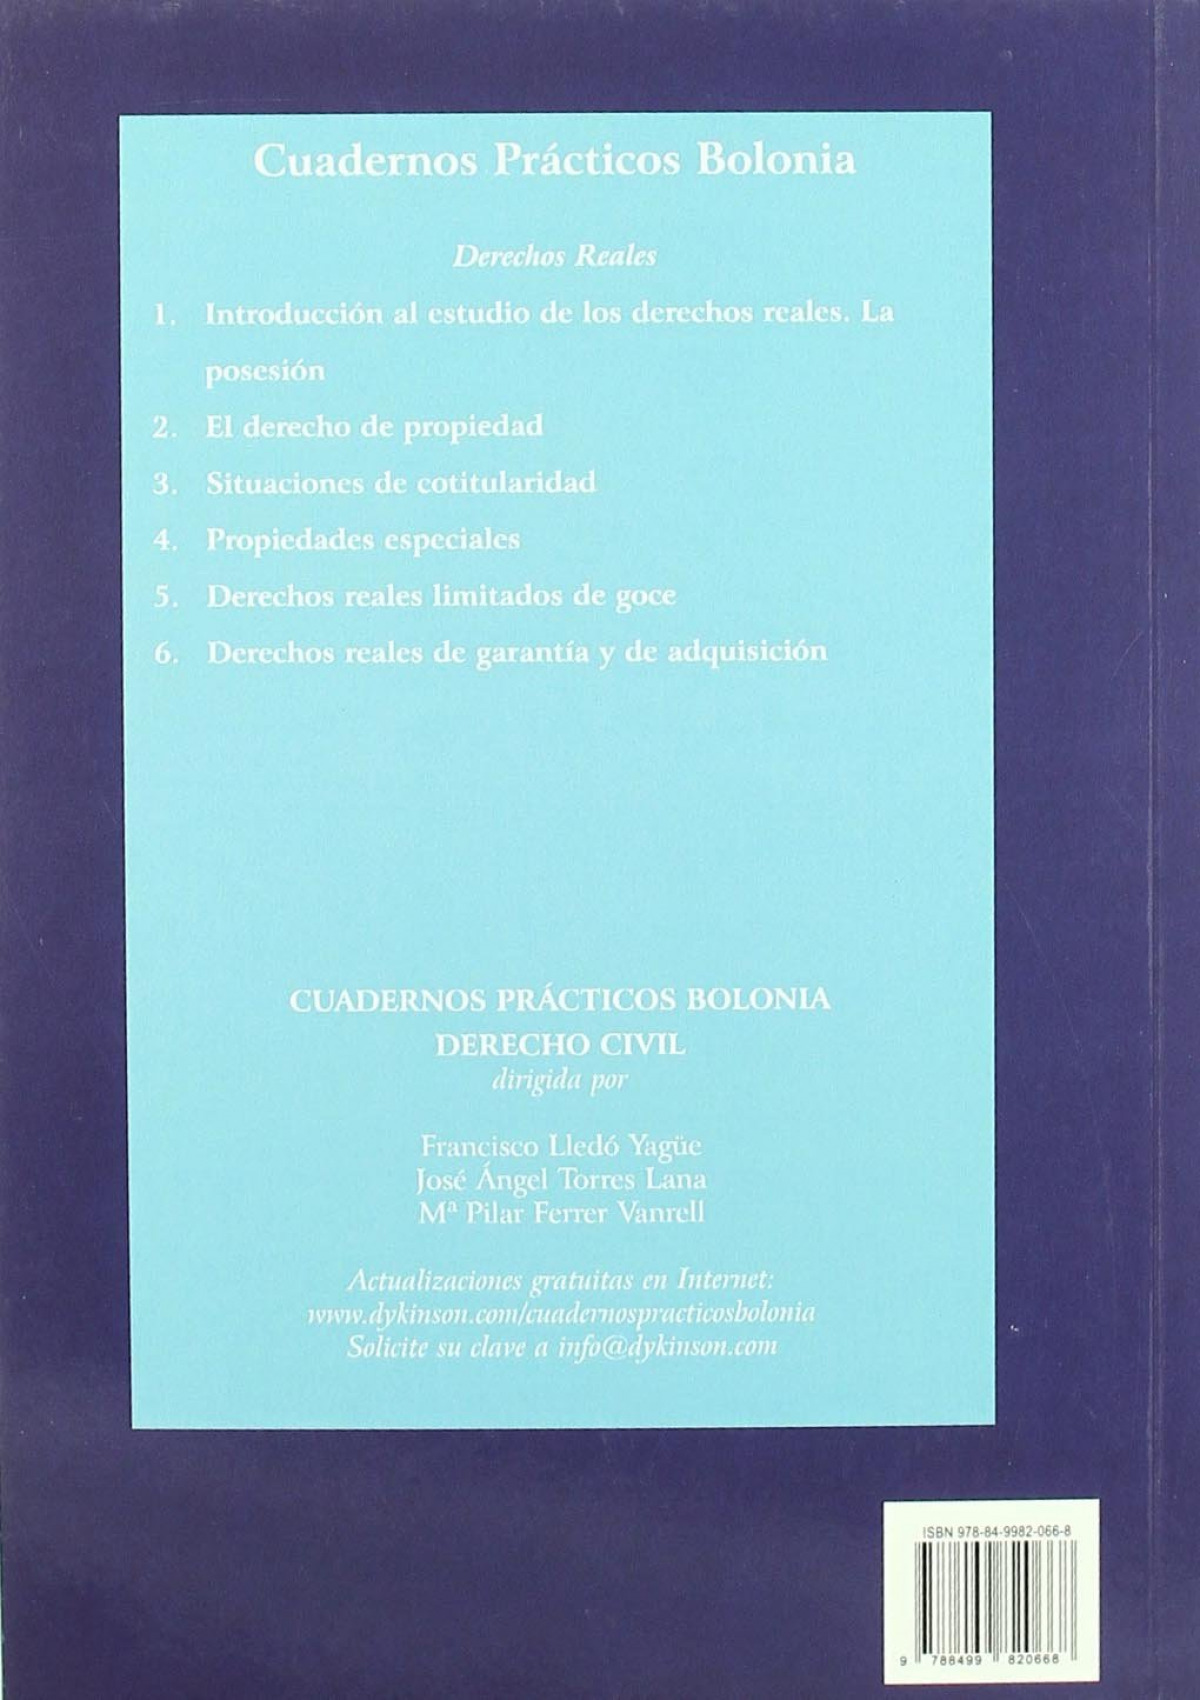 Cuadernos Prácticos Bolonia. Derechos Reales. Cuaderno IV. Propiedades - Pérez de Ontiveros Baquero [et al.], Carmen